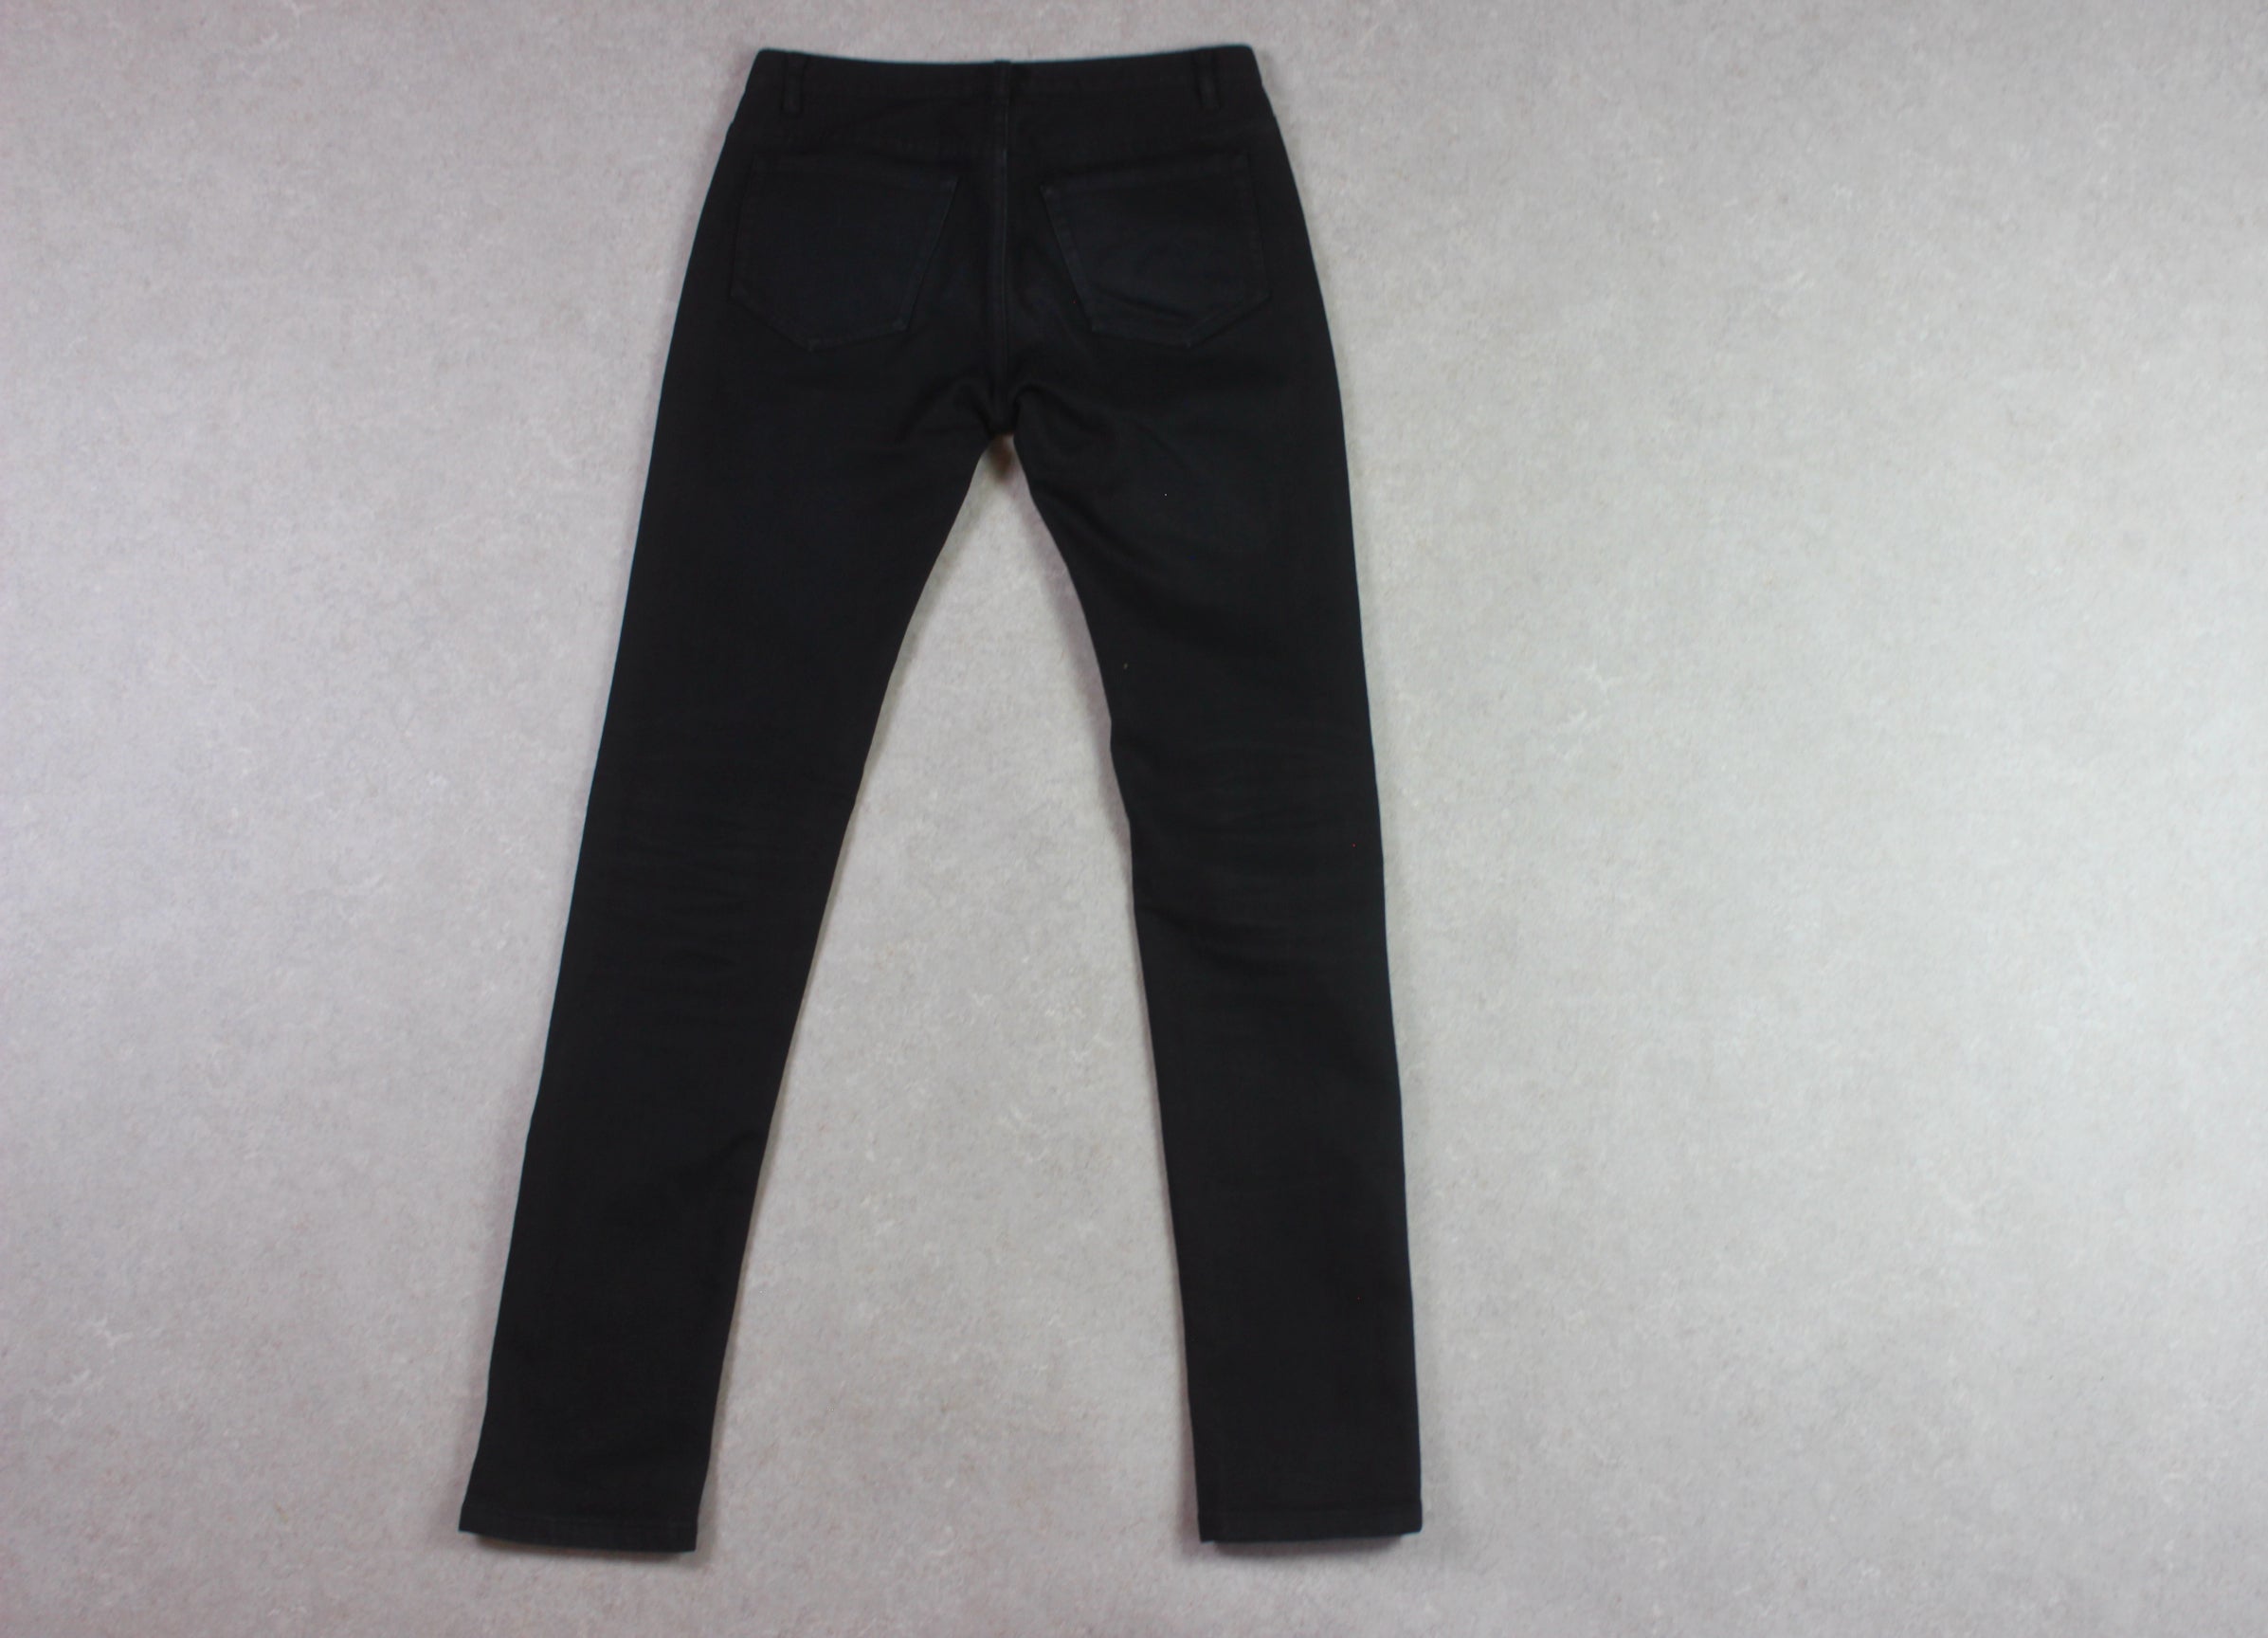 A.P.C. - Petit Standard Jeans - Black - 28